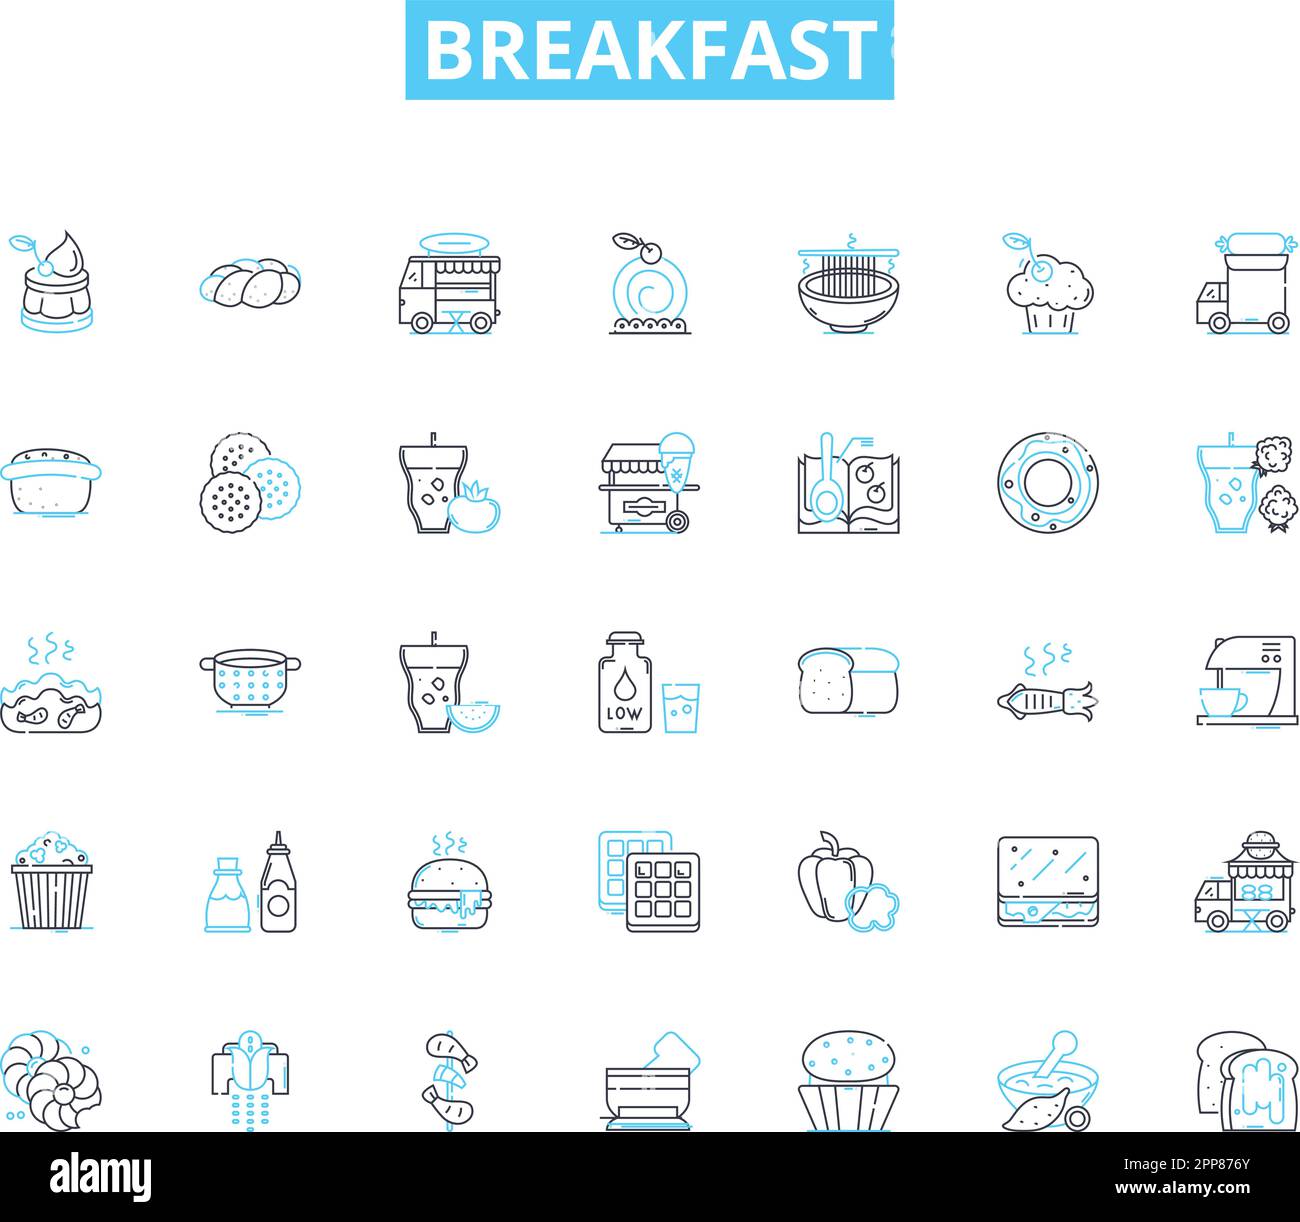 Frühstück mit linearen Symbolen. Pfannkuchen, Waffeln, Omelette, Müsli Und Cornflakes, Toast, Bagel-, Croissant-Linienvektor- und Konzeptschilder. Englischer Muffin, Speck, Wurst Stock Vektor